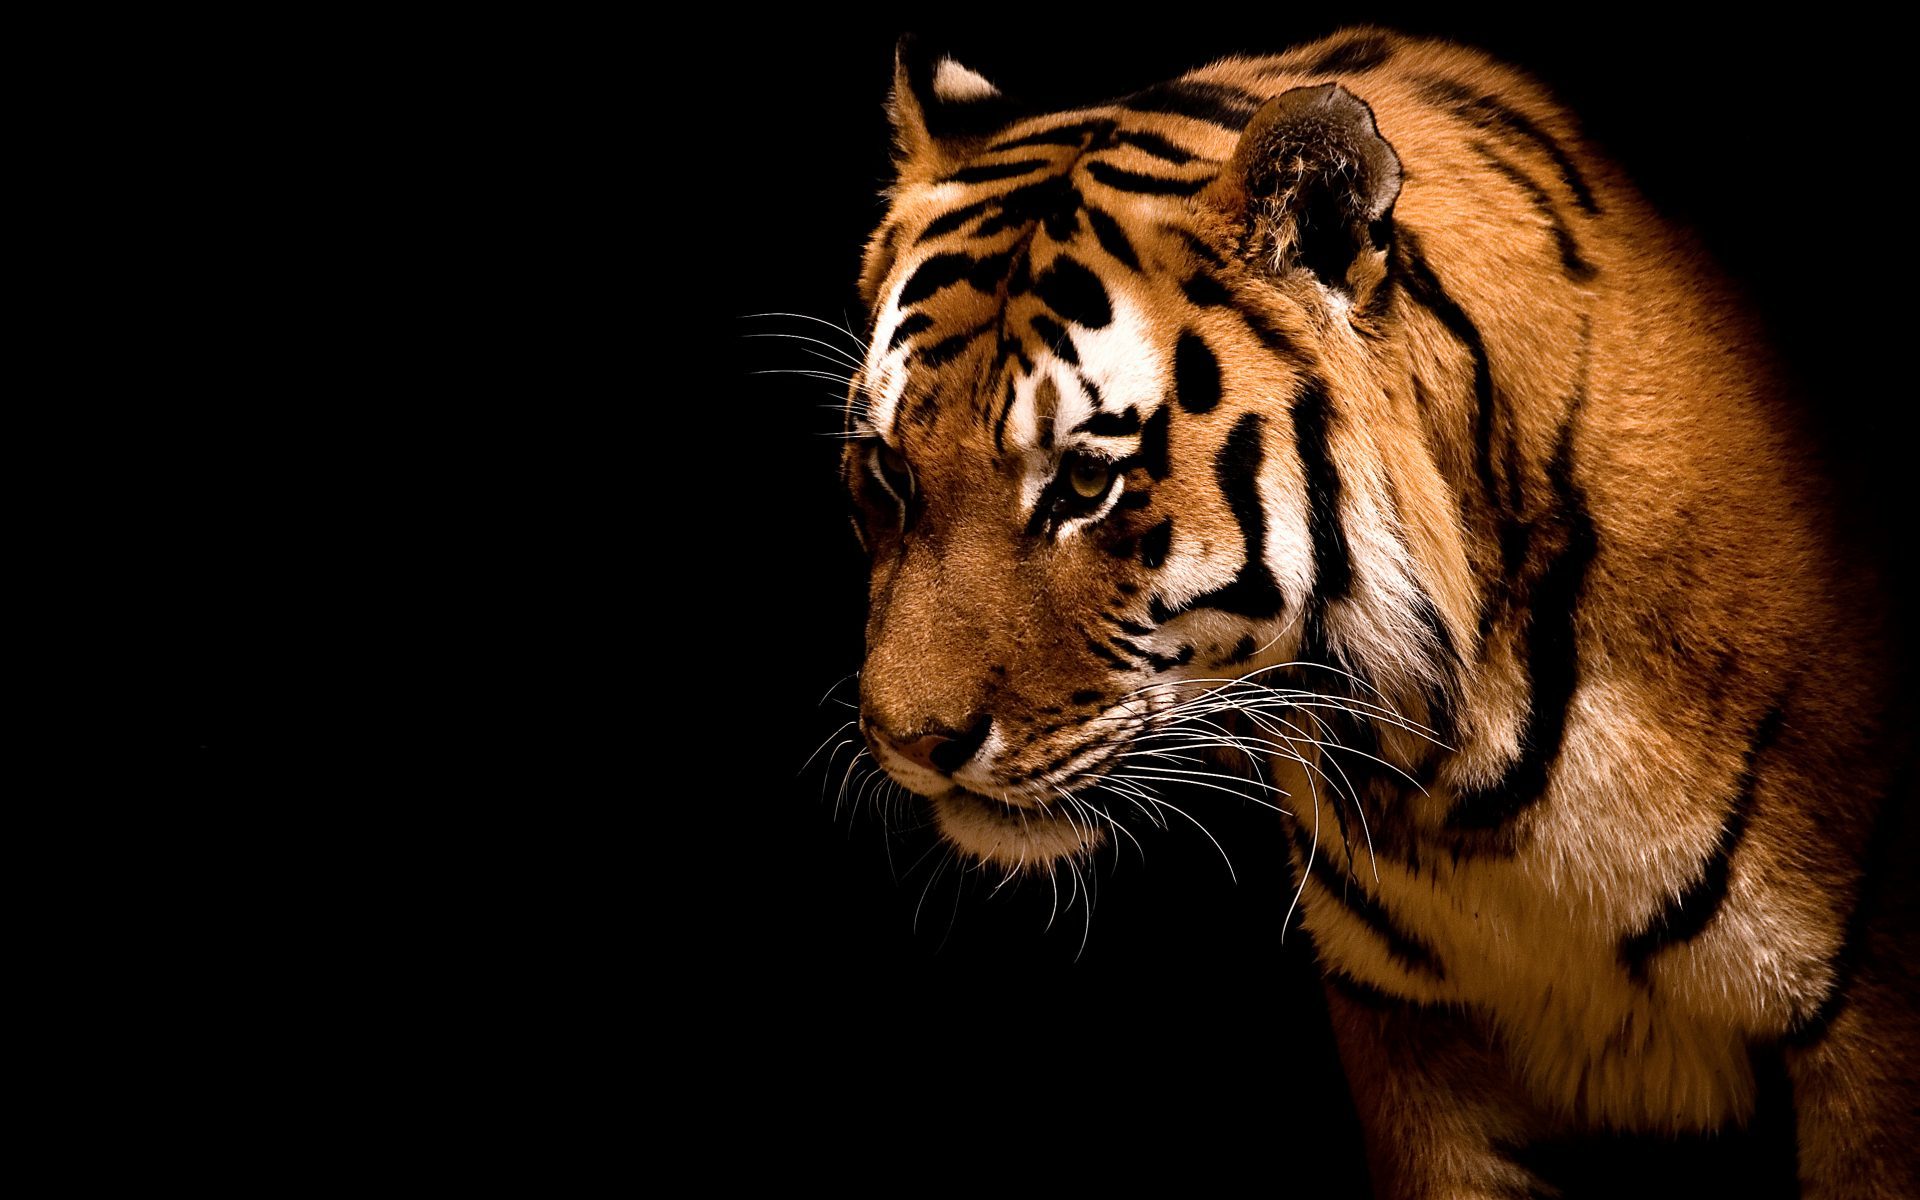 tigers, animals, black FHD, 4K, UHD